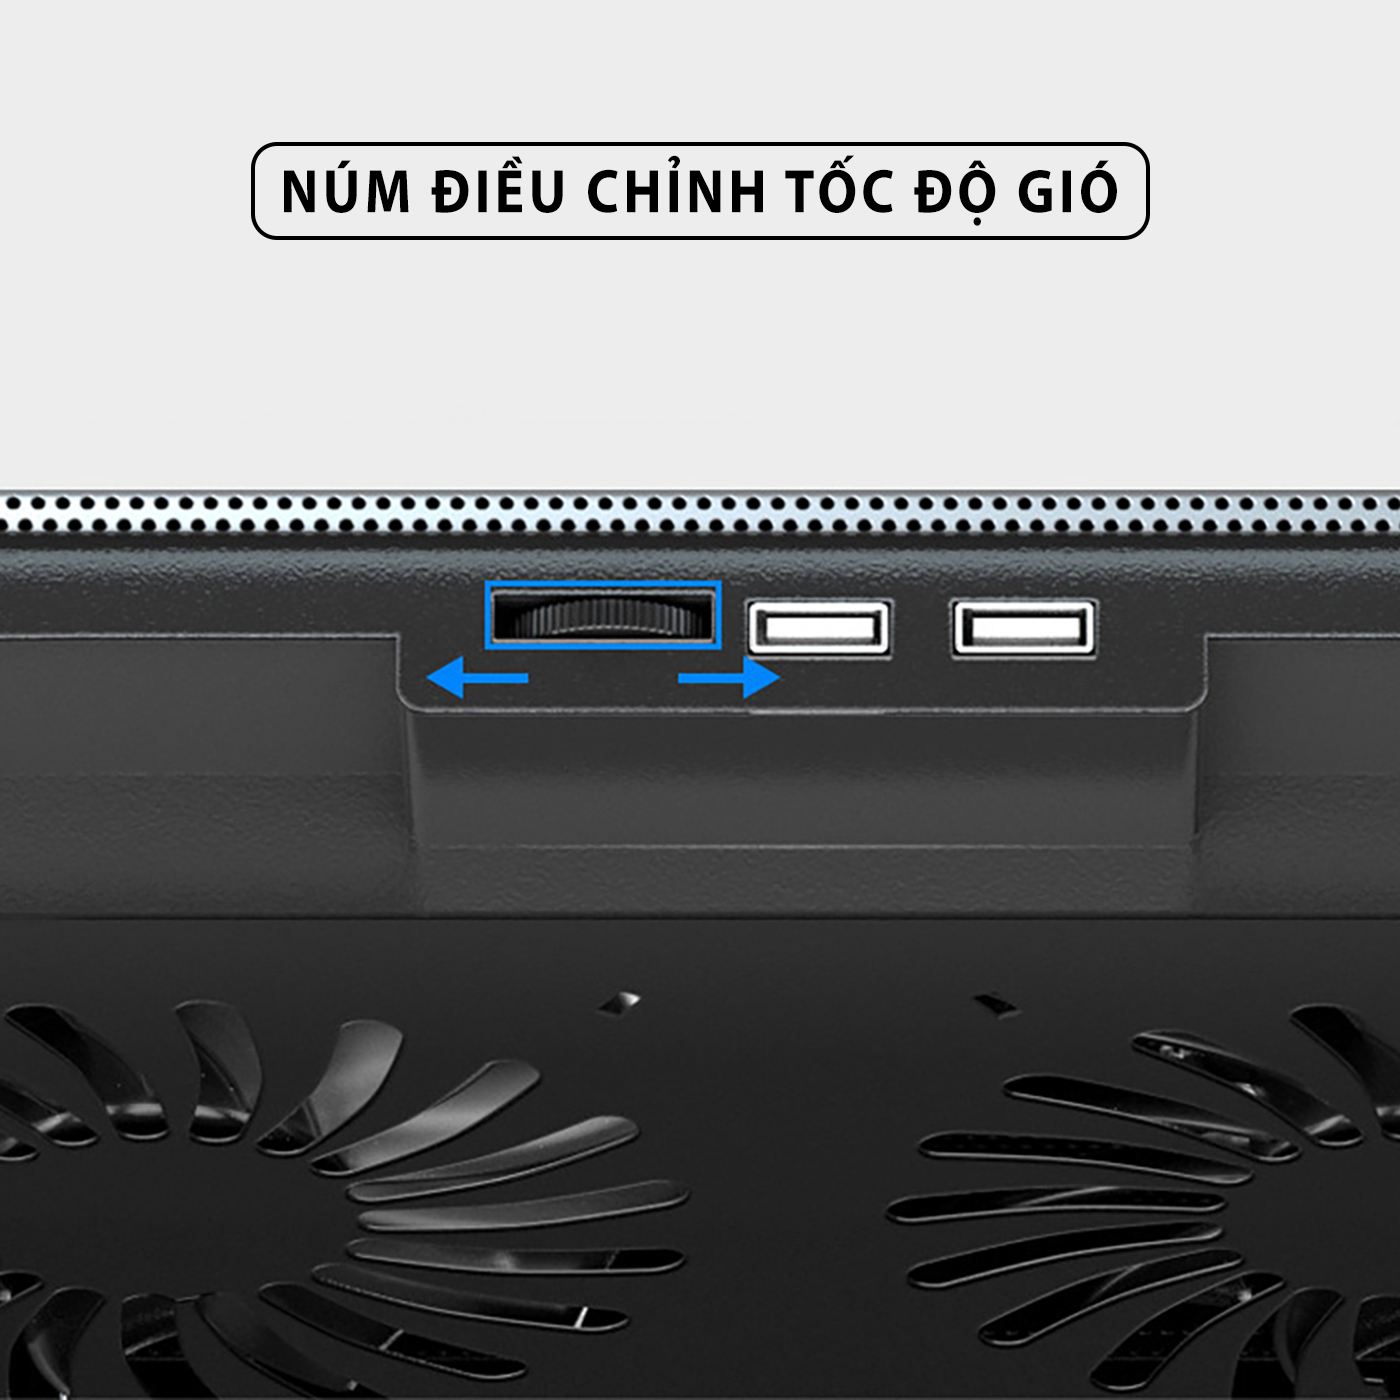 Đế tản nhiệt laptop macbook máy tính bảng SIDOTECH Q100 làm mát nhanh với 2 quạt lớn chống ồn đèn led gaming giúp mát máy tăng fps giảm giật lag cho văn phòng game thủ - Hàng chính hãng